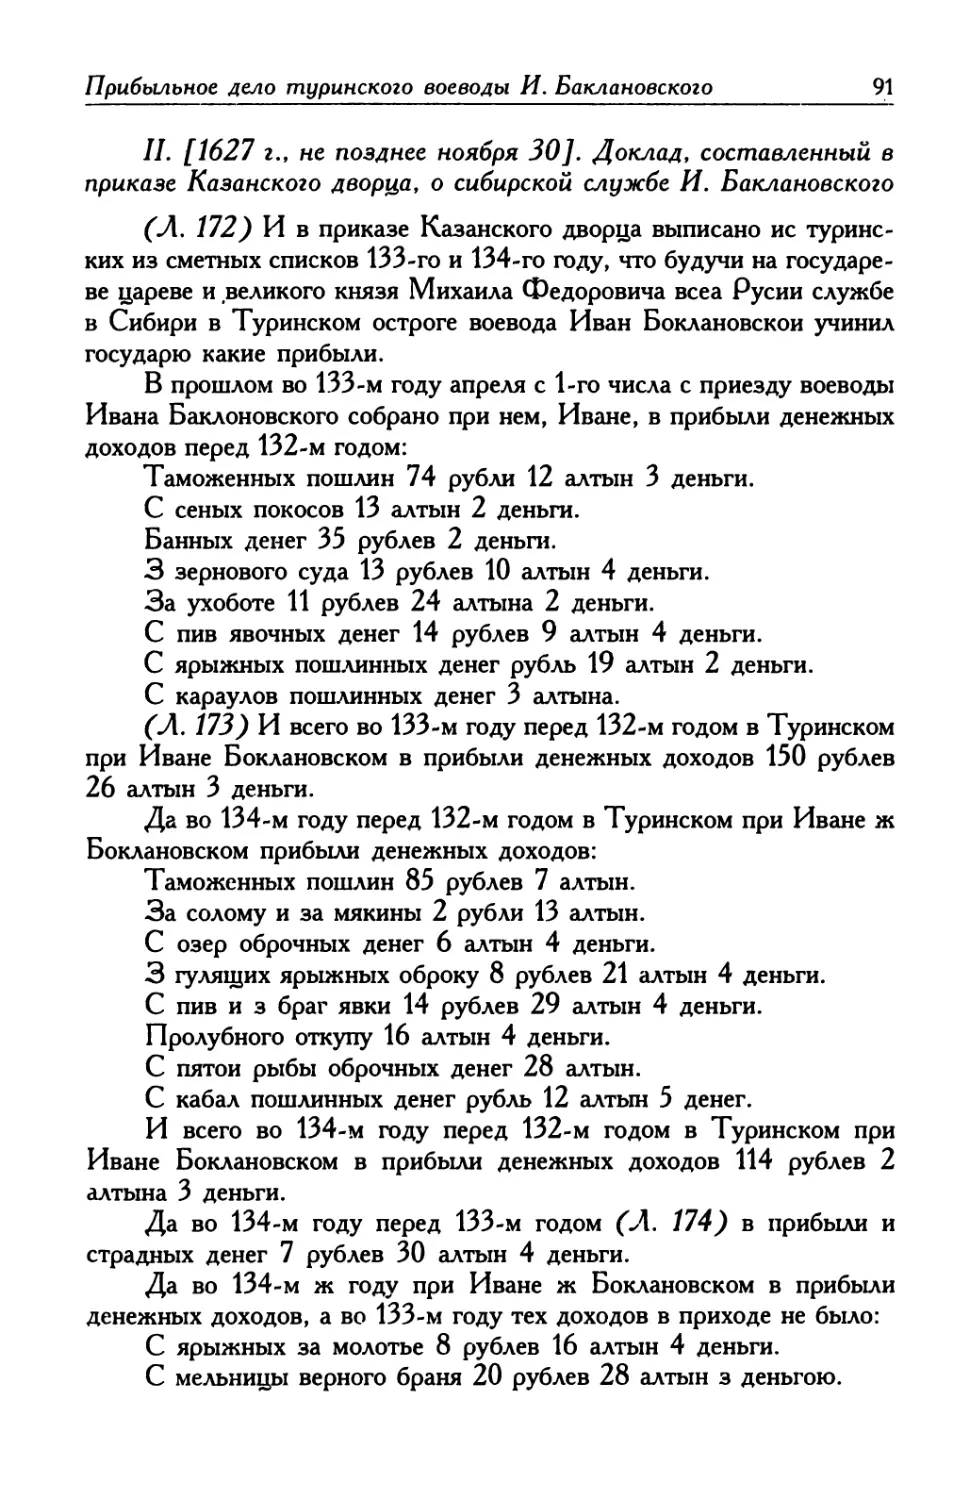 II. [1627 г., не позднее ноября 30]. Доклад, составленный в приказе Казанского дворца, о сибирской службе И. Баклановского